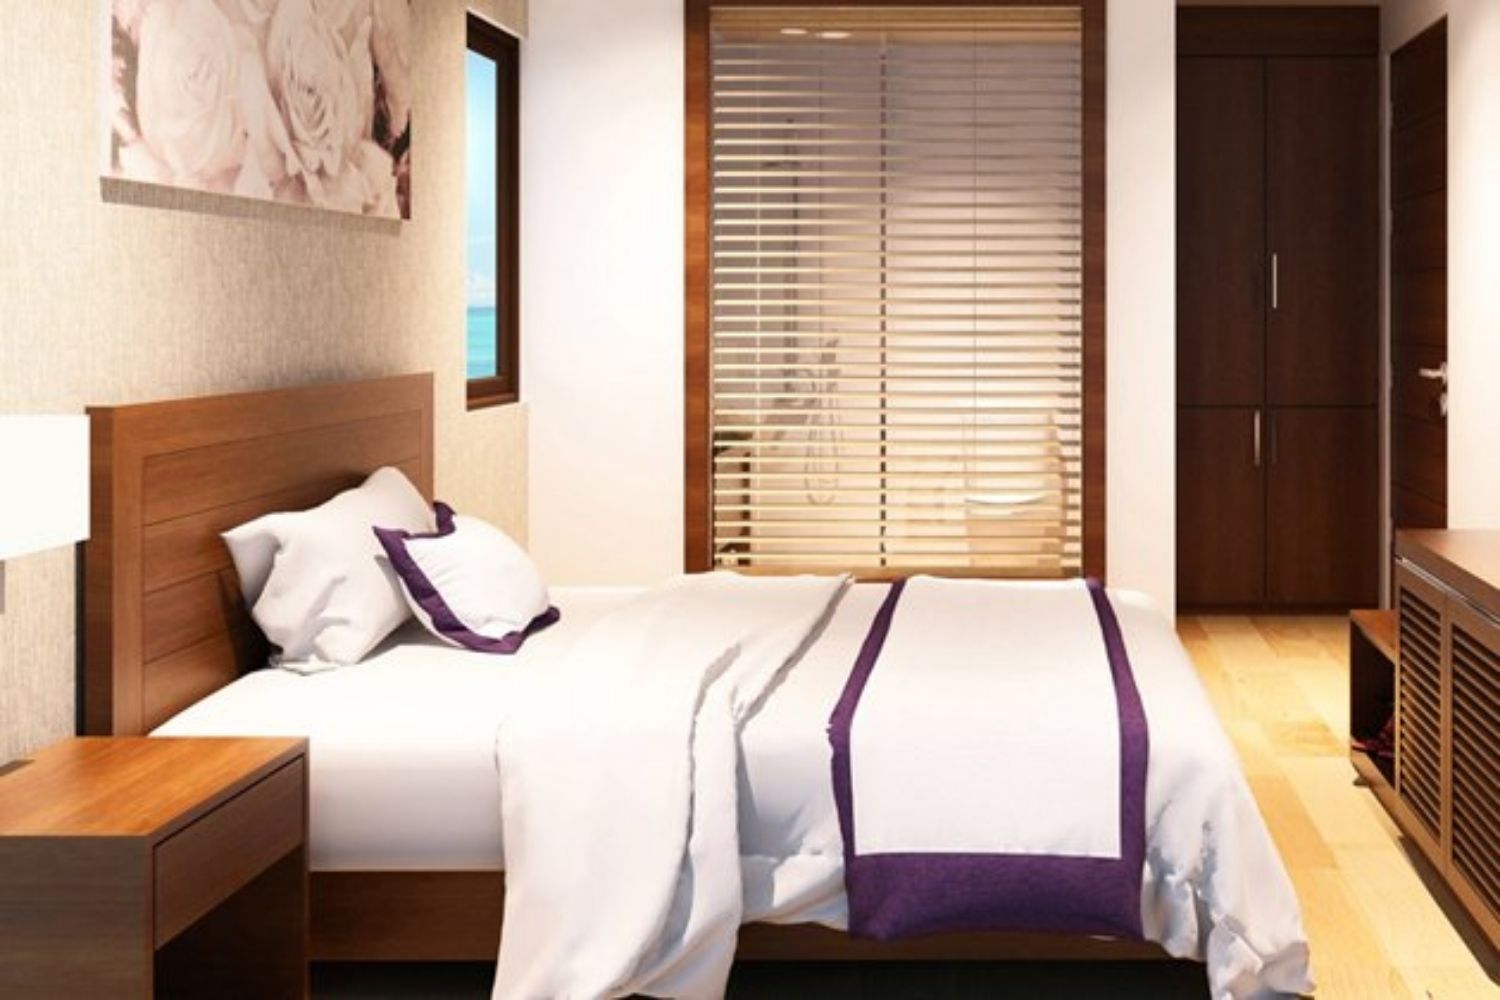 Đến Aria Hotel tận hưởng đẳng cấp khách sạn 4 sao bậc nhất tại Đà Nẵng 5